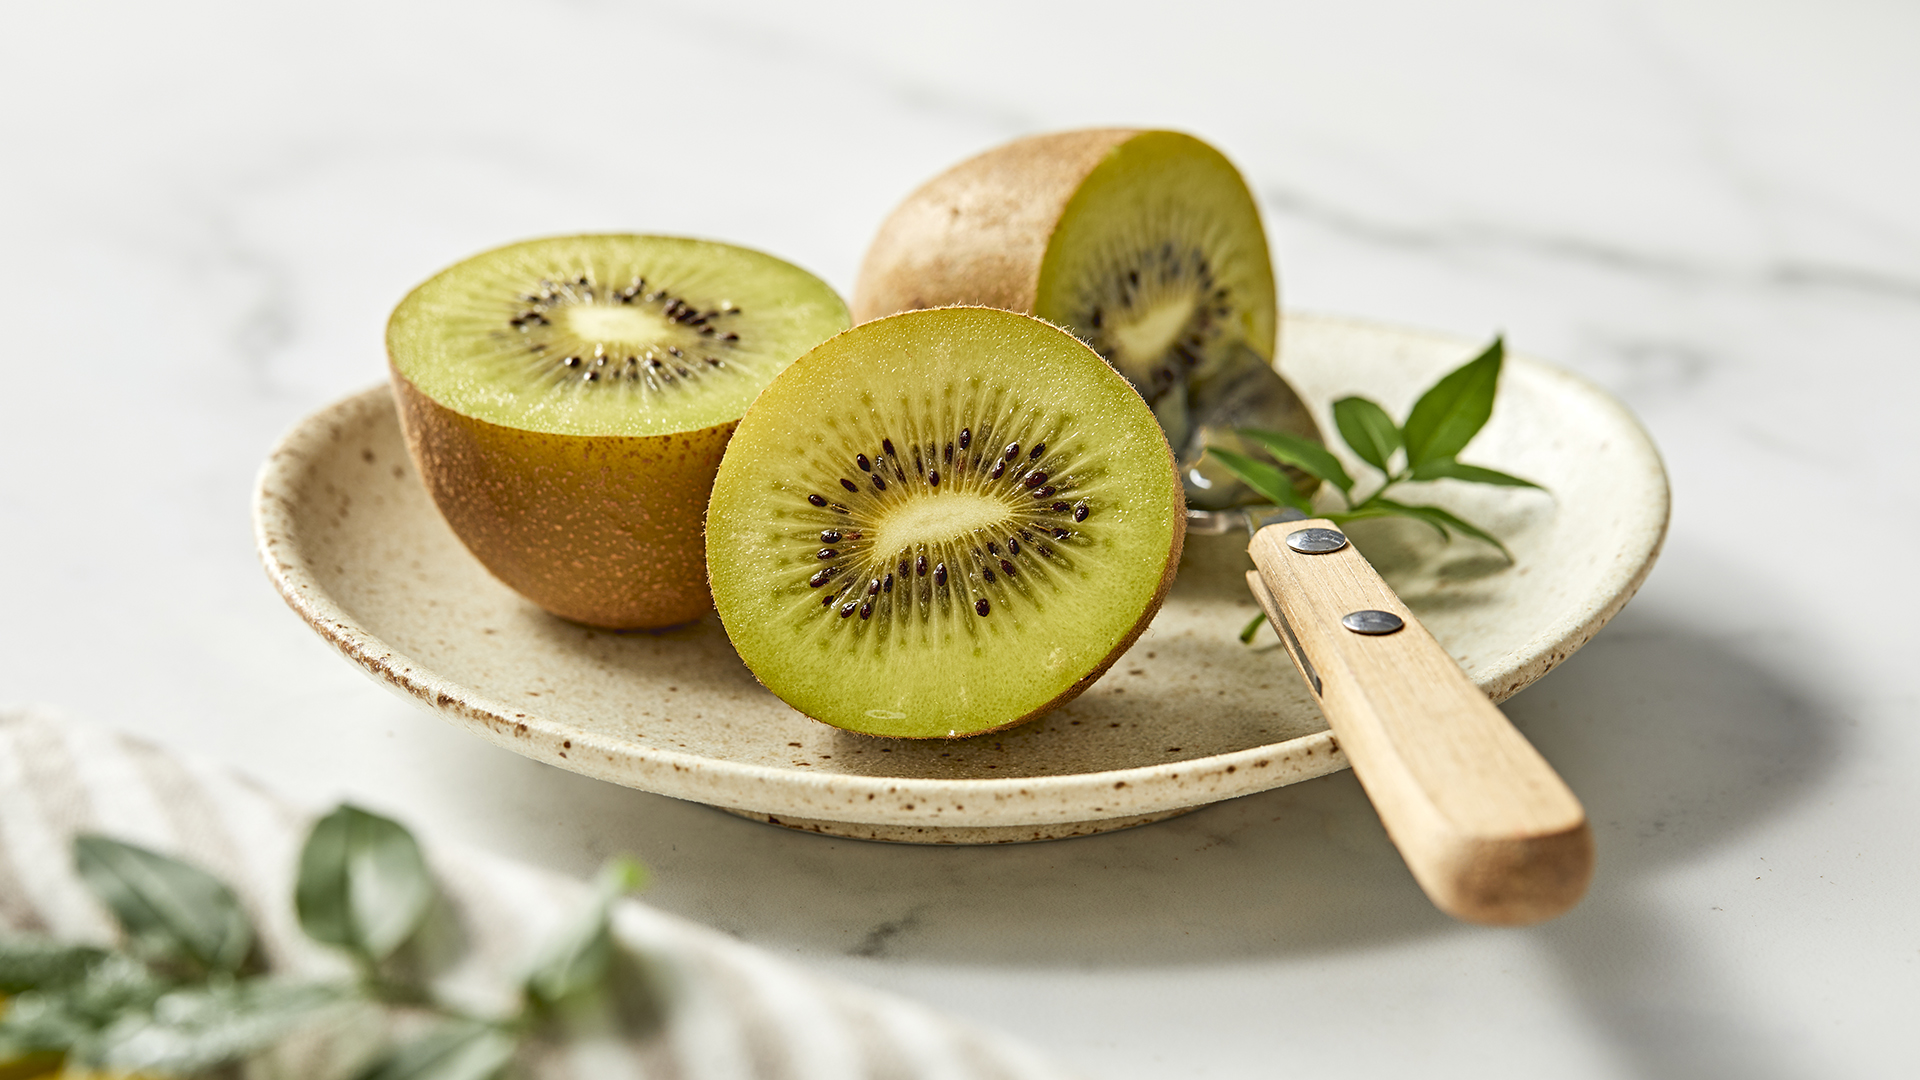 Organic Kiwifruit from New Zealand on the Rise